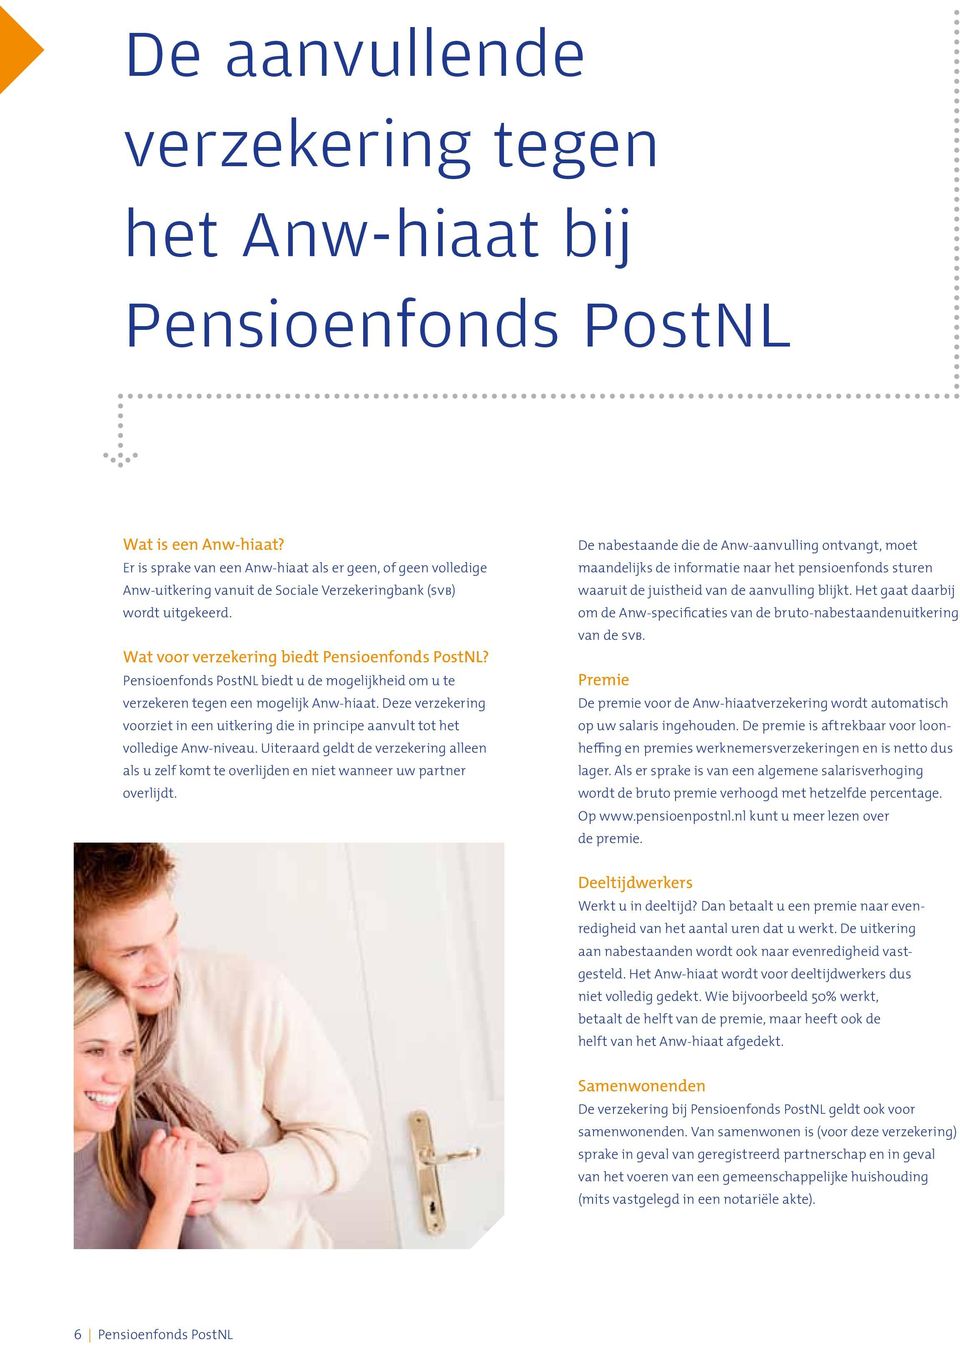 Pensioenfonds PostNL biedt u de mogelijkheid om u te verzekeren tegen een mogelijk Anw-hiaat. Deze verzekering voorziet in een uitkering die in principe aanvult tot het volledige Anw-niveau.